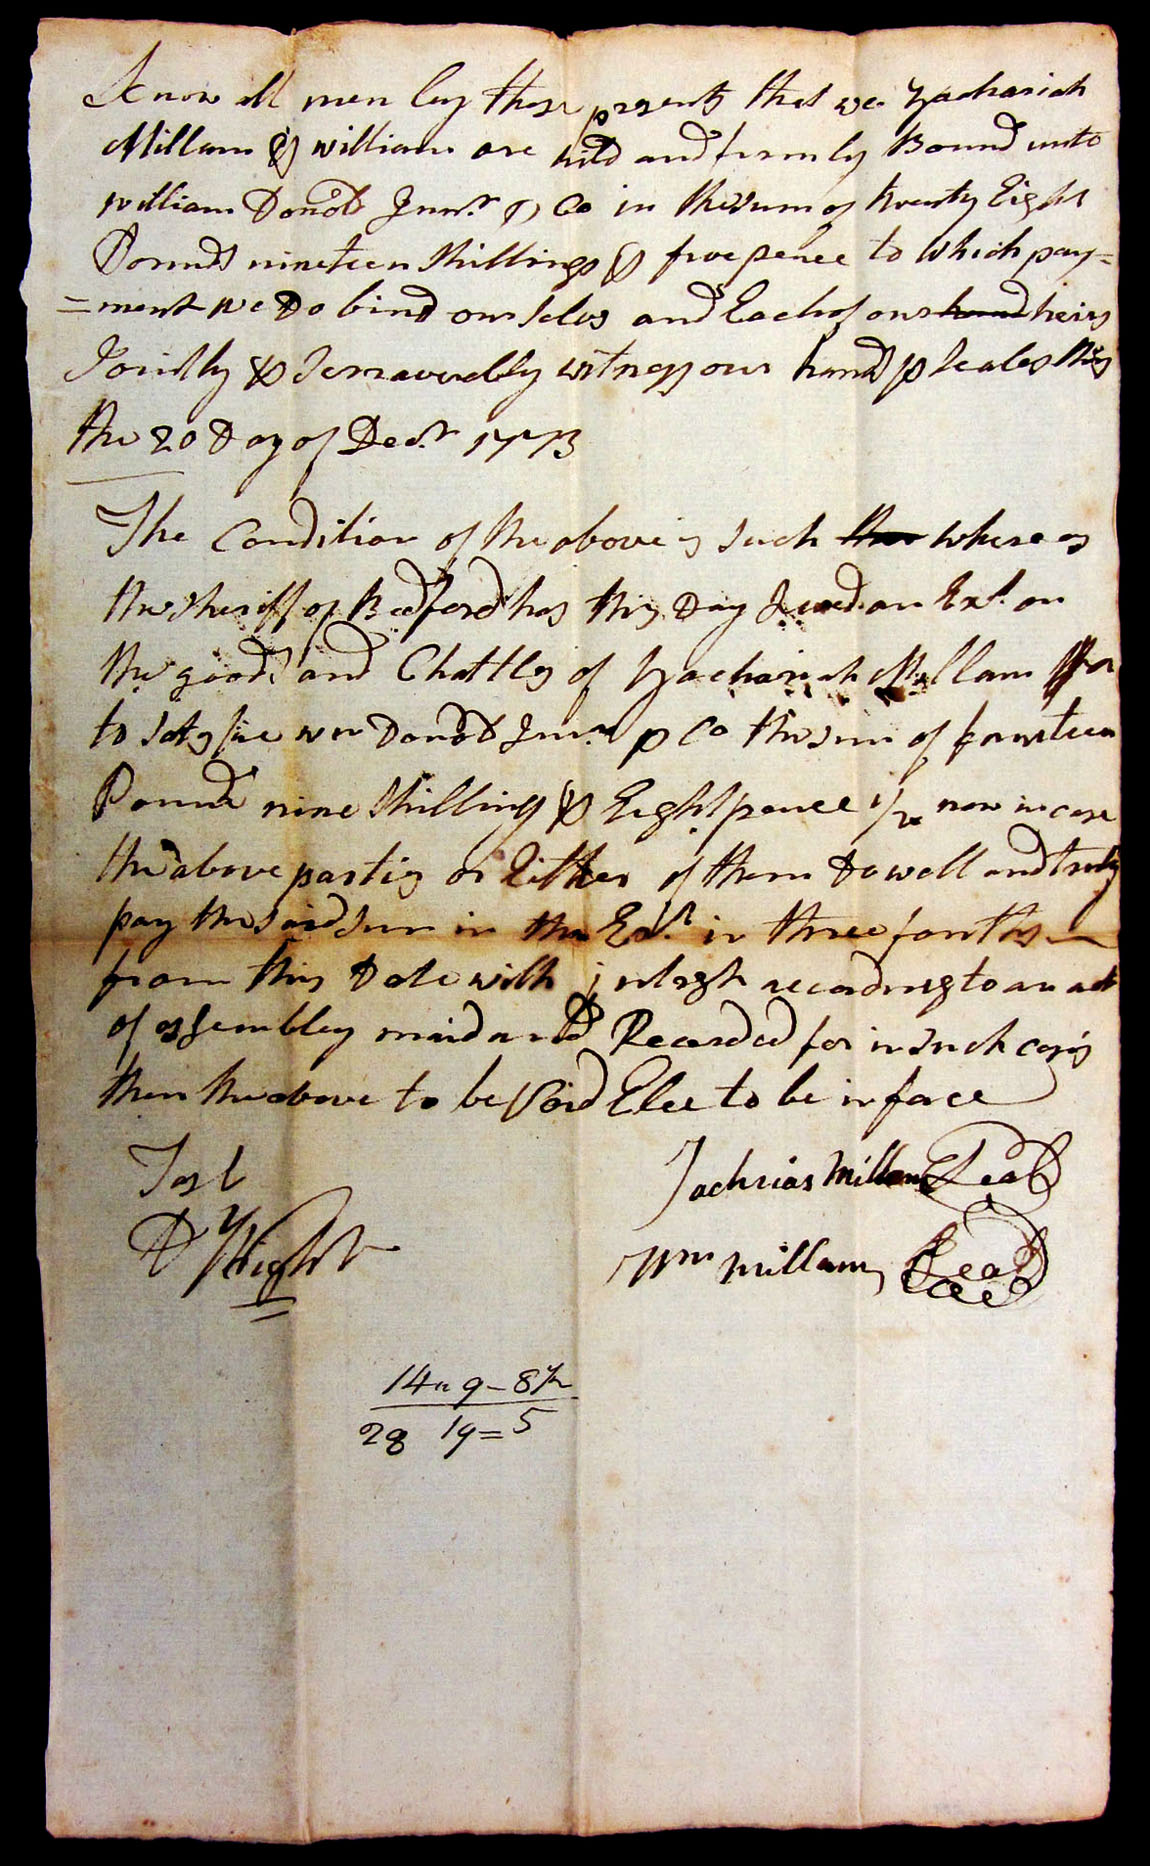 Zachariah MIlam Bond to William Donald Co 20 DEC 1773